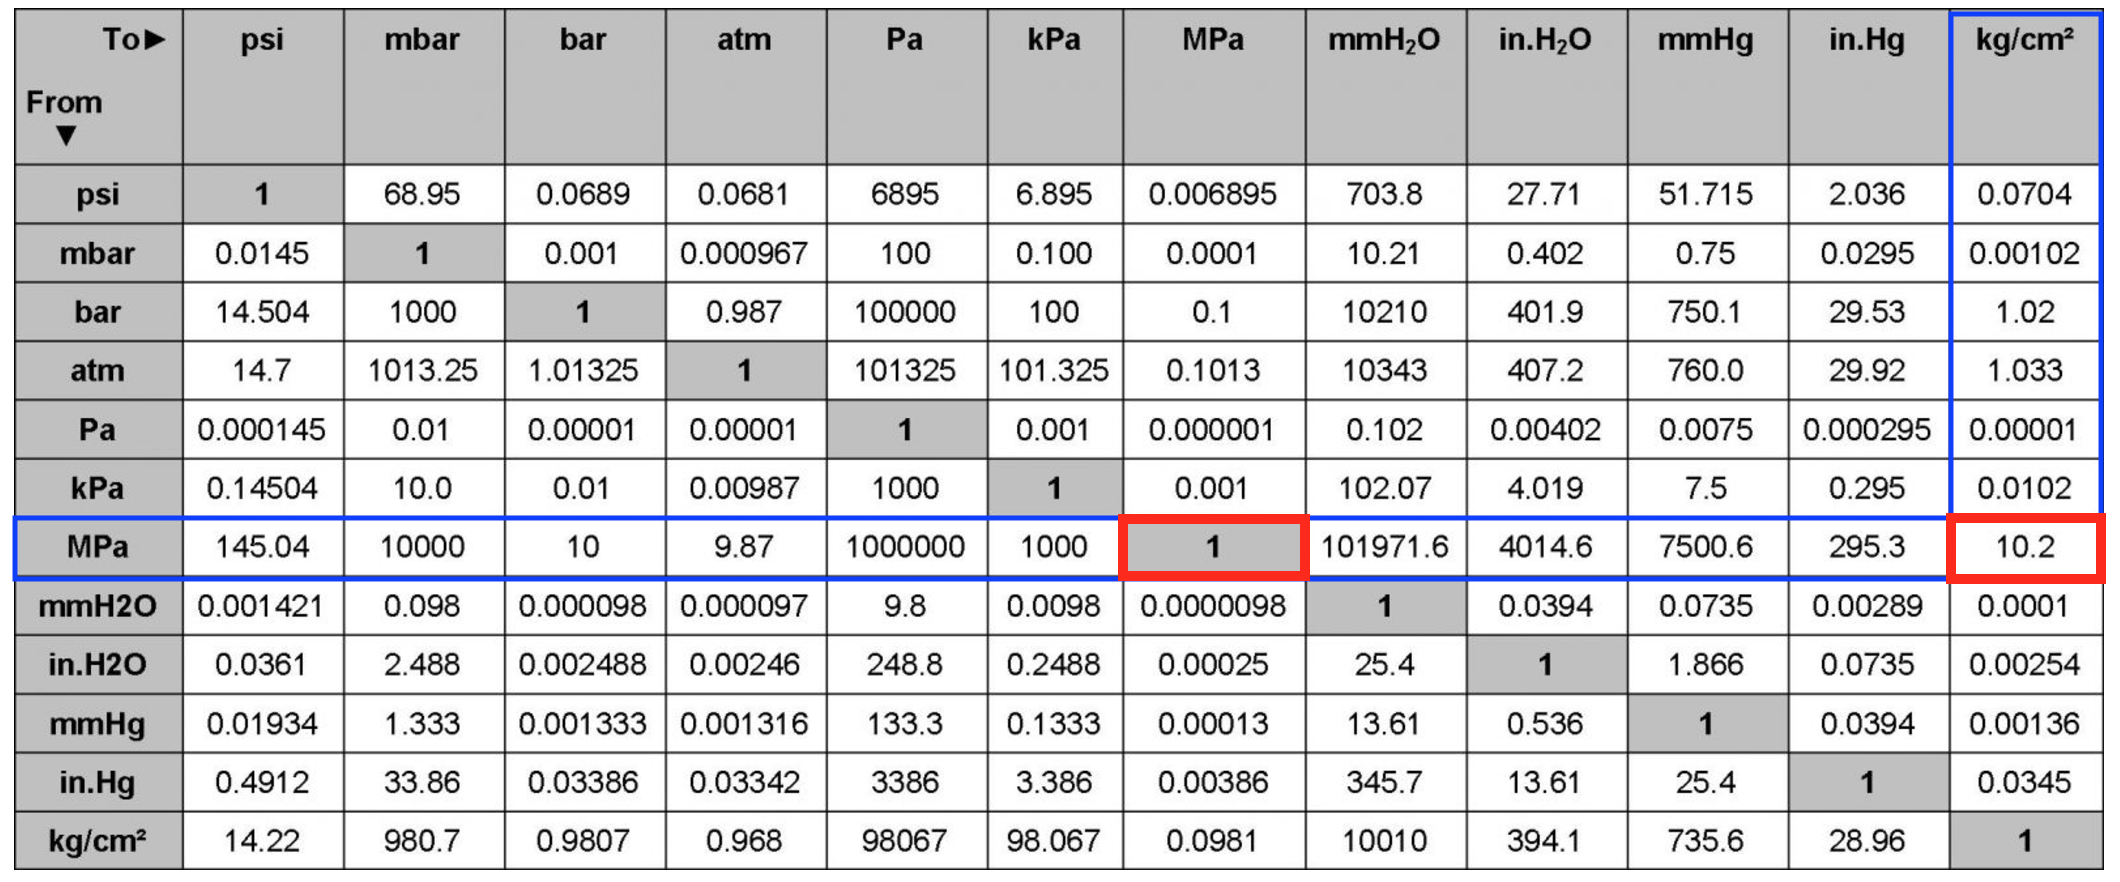 40 ru s. Единицы измерения давления psi. Таблица давления МПА В бар и атм. 1 MPA В кгс/см2. Единицы давления перевод таблица.